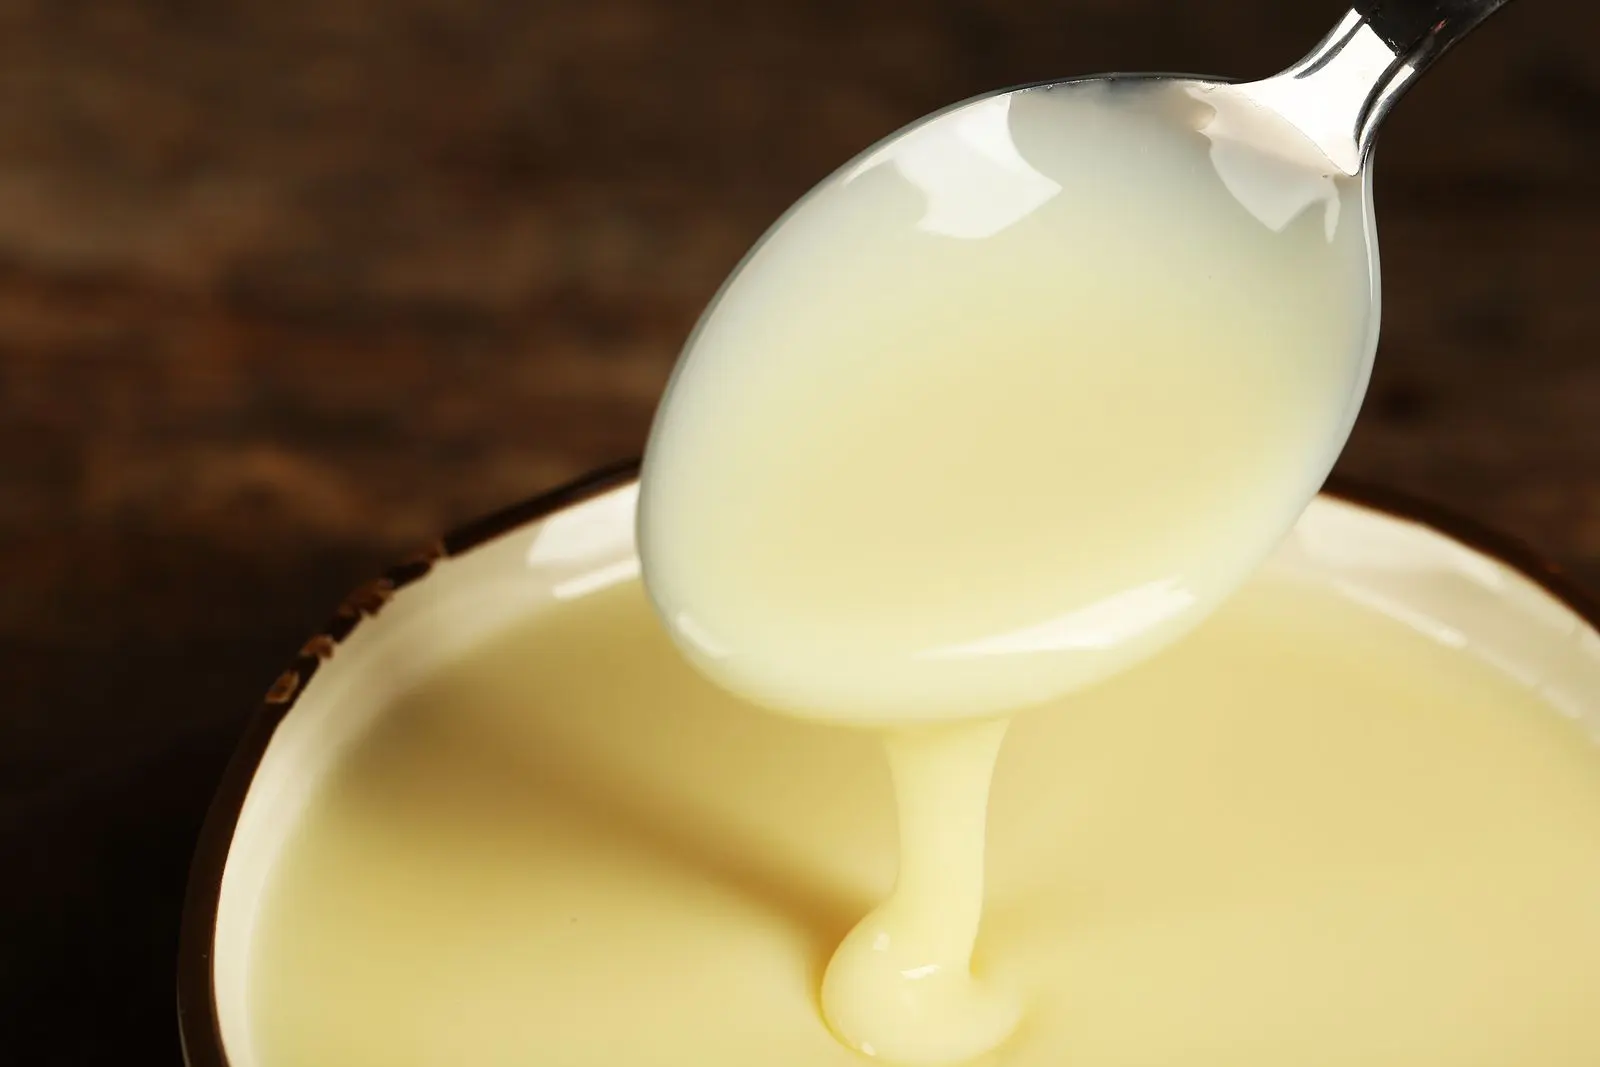 Ini alasan susu kental manis bisa jadi mimpi buruk untuk kamu, girls! (Sumber Foto: Stay at Home Mum)